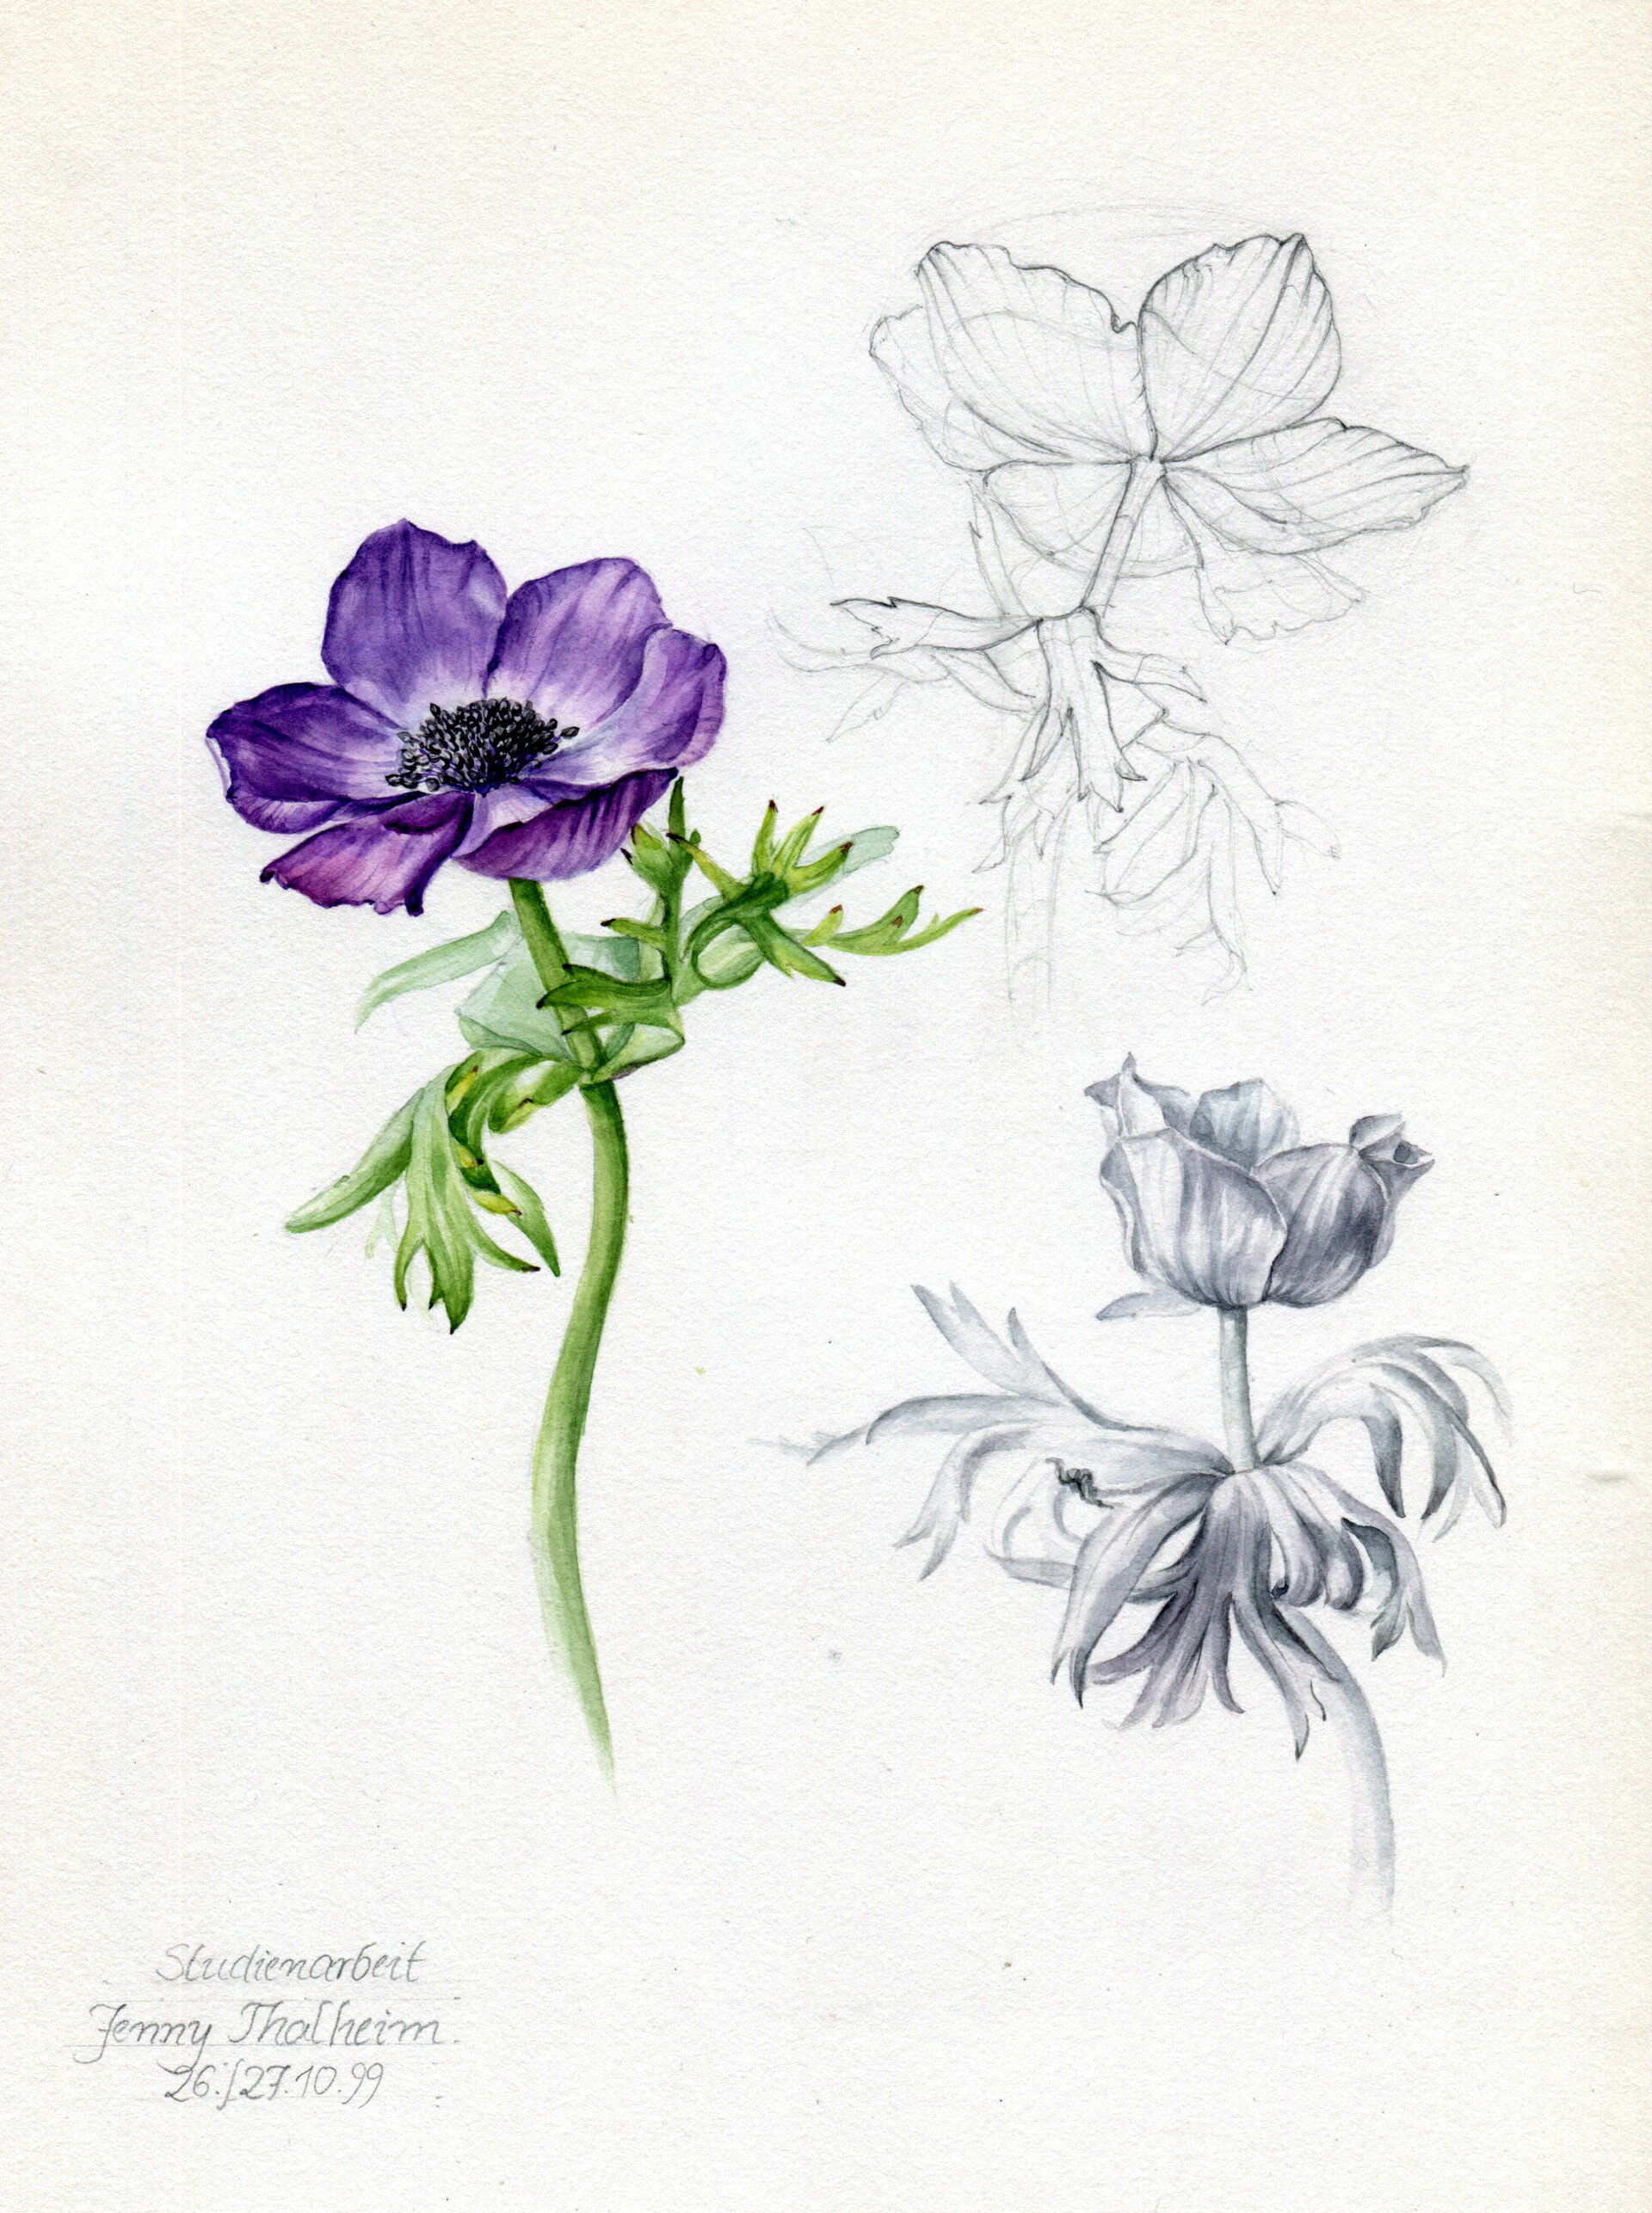 ArtStation - Anemone - Botanical Illustration, Jenny Thalheim